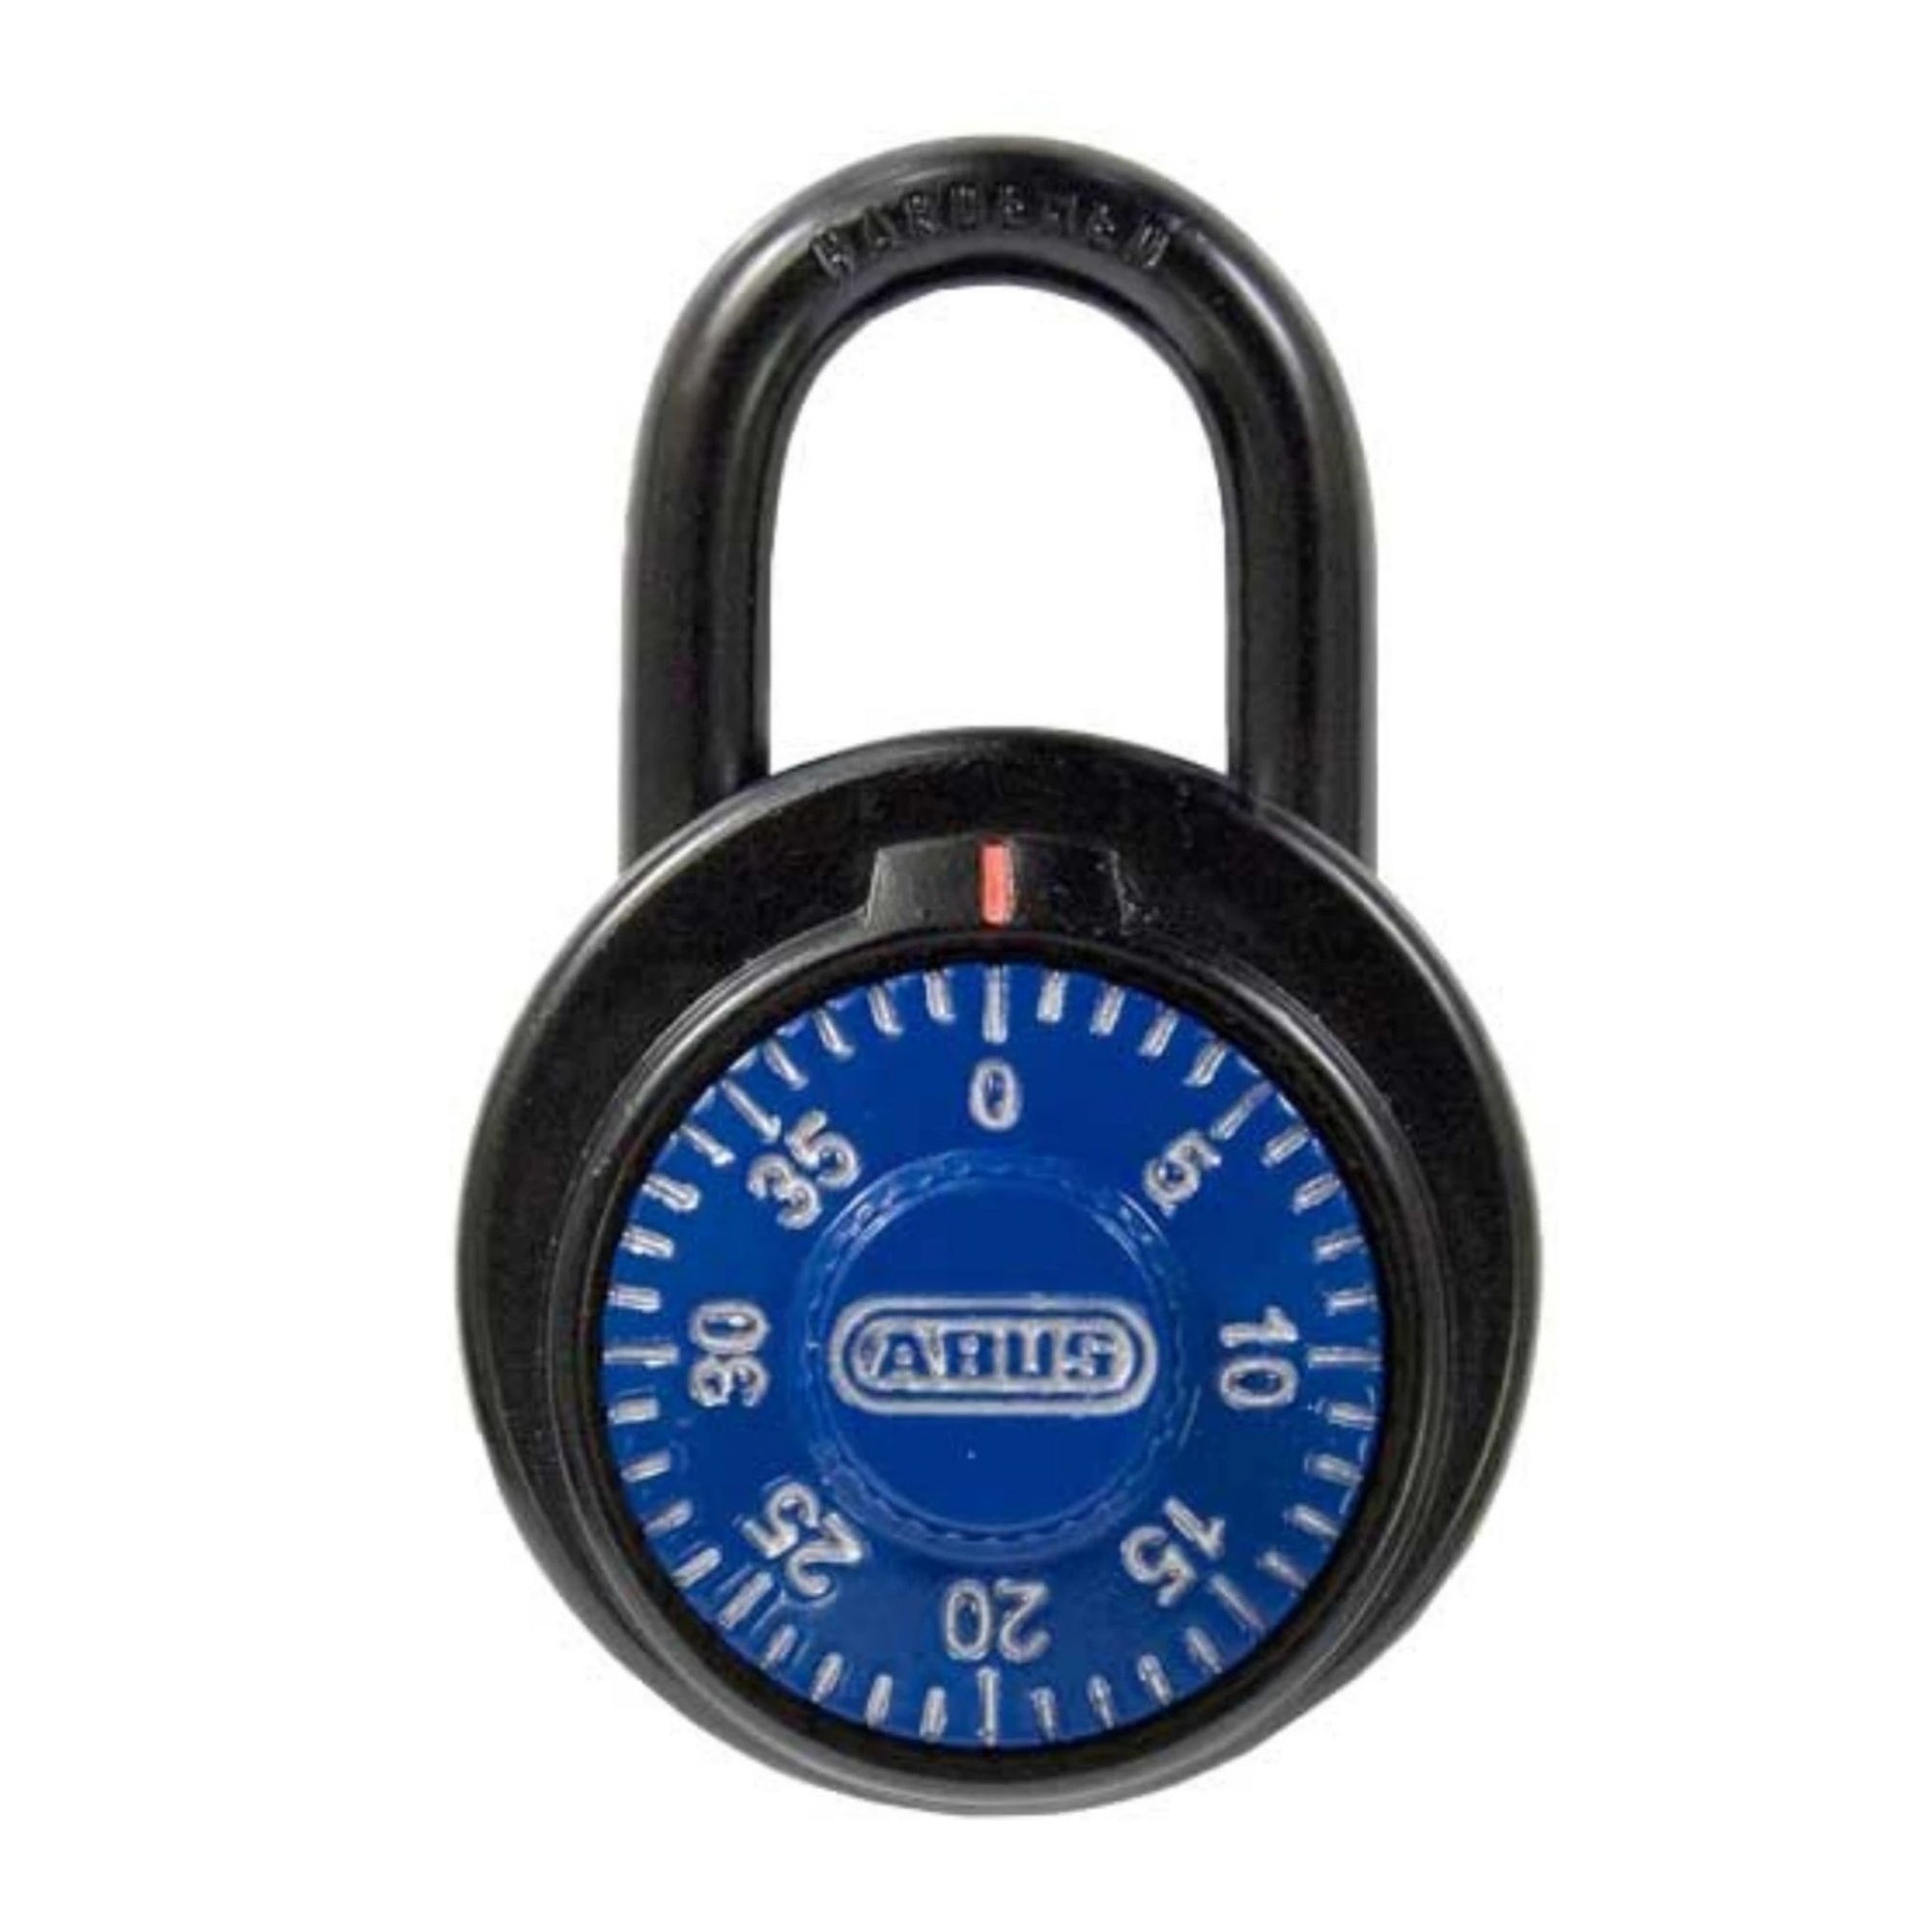 Abus 78/50 KC KA 507A Blue Locker Padlock with Key Control Matched to Key Number KA507A - The Lock Source